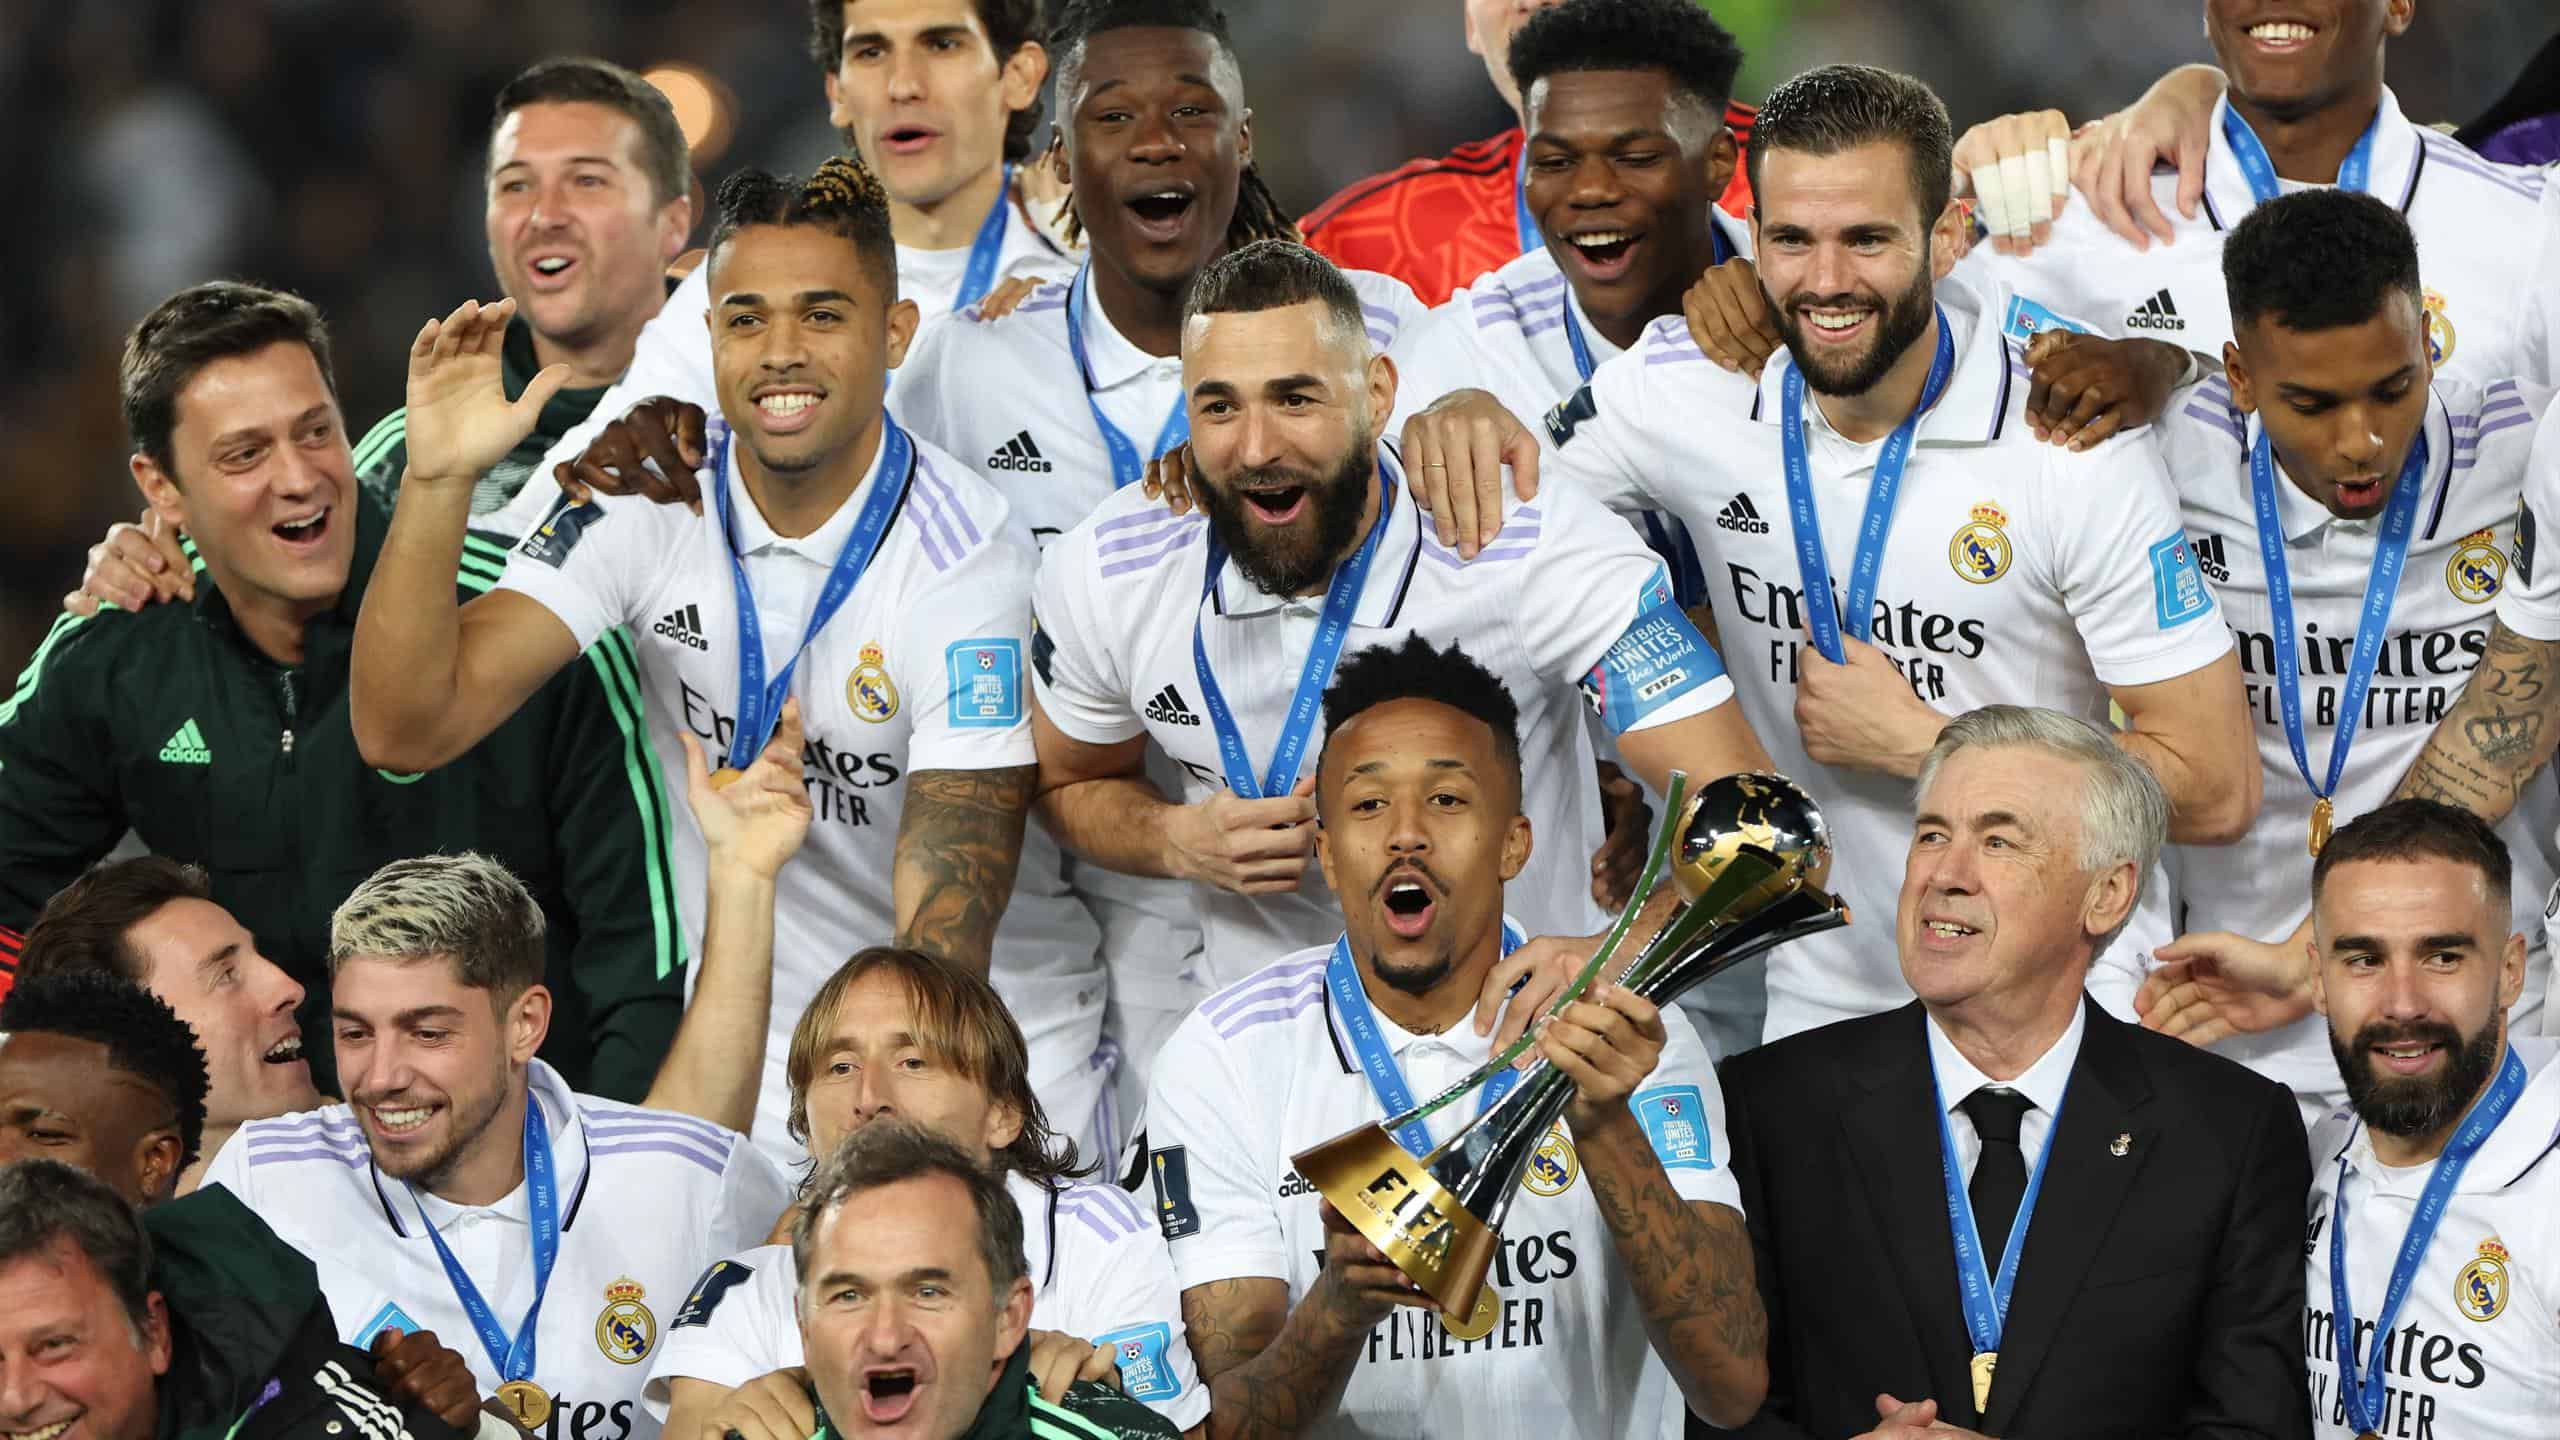 Lịch sử và con đường phát triển của Real Madrid